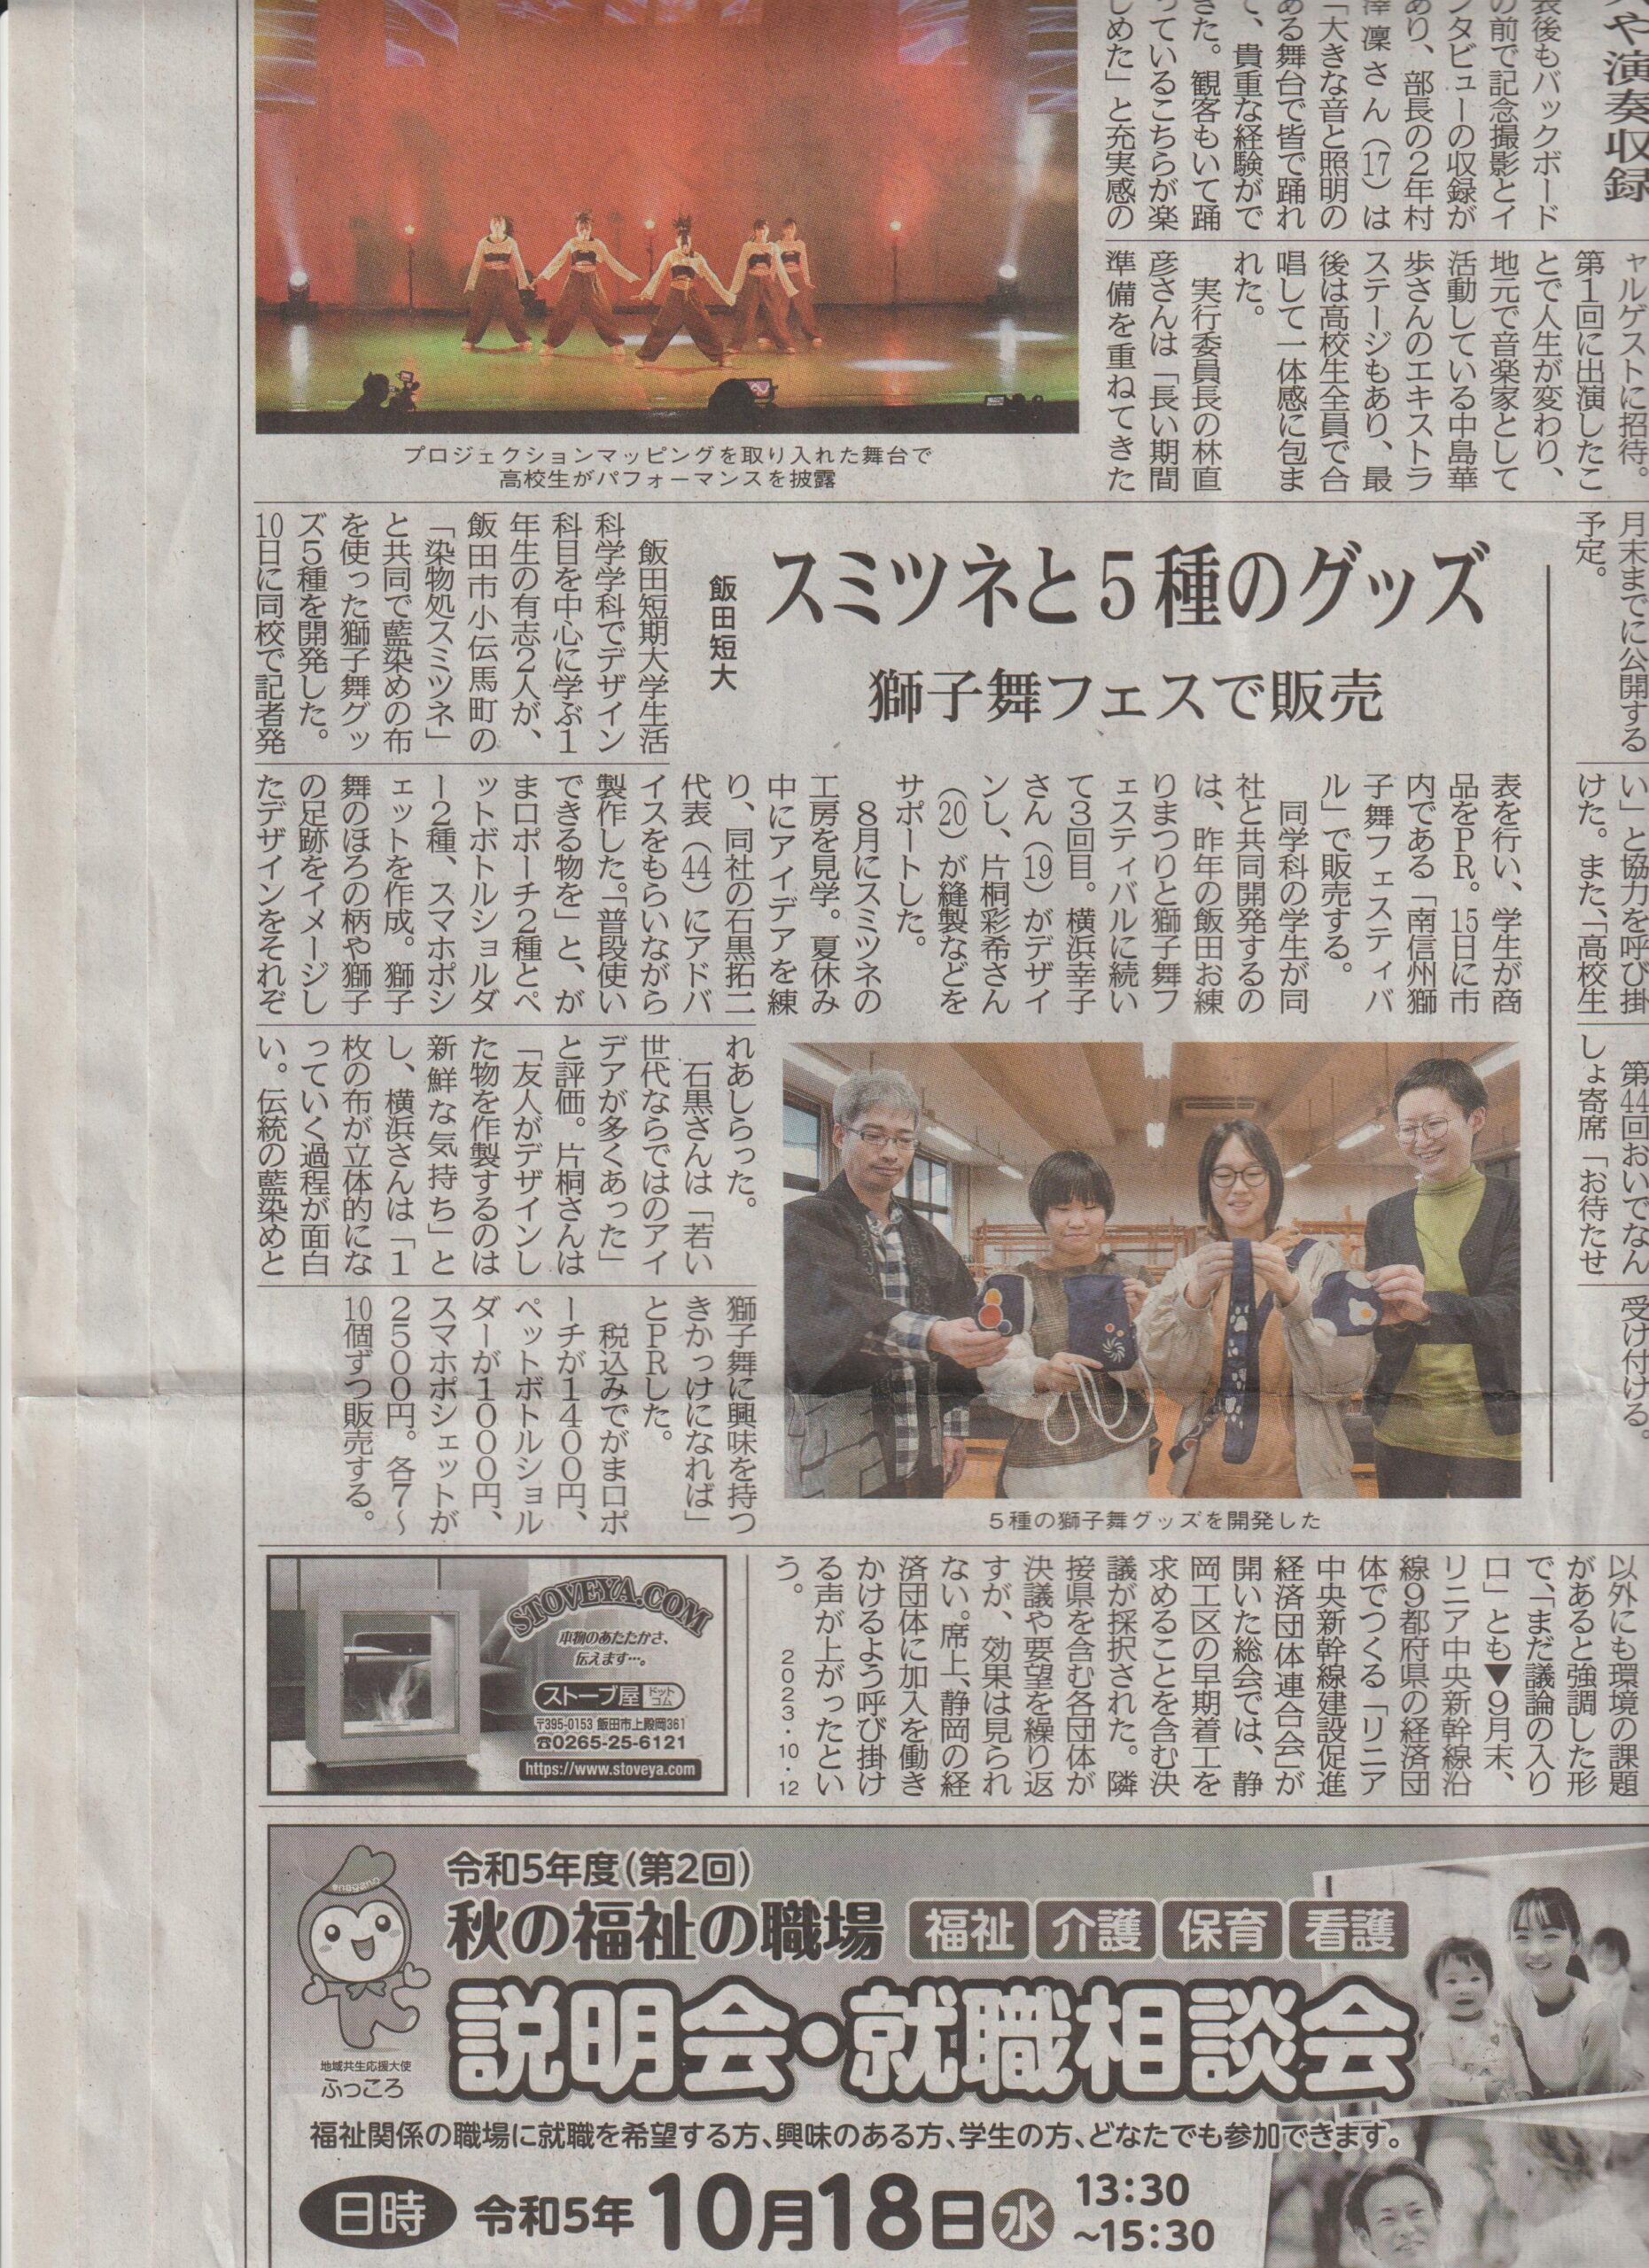 「南信州新聞」様に「飯田短期大学合同プロジェクト」の記事が掲載されました